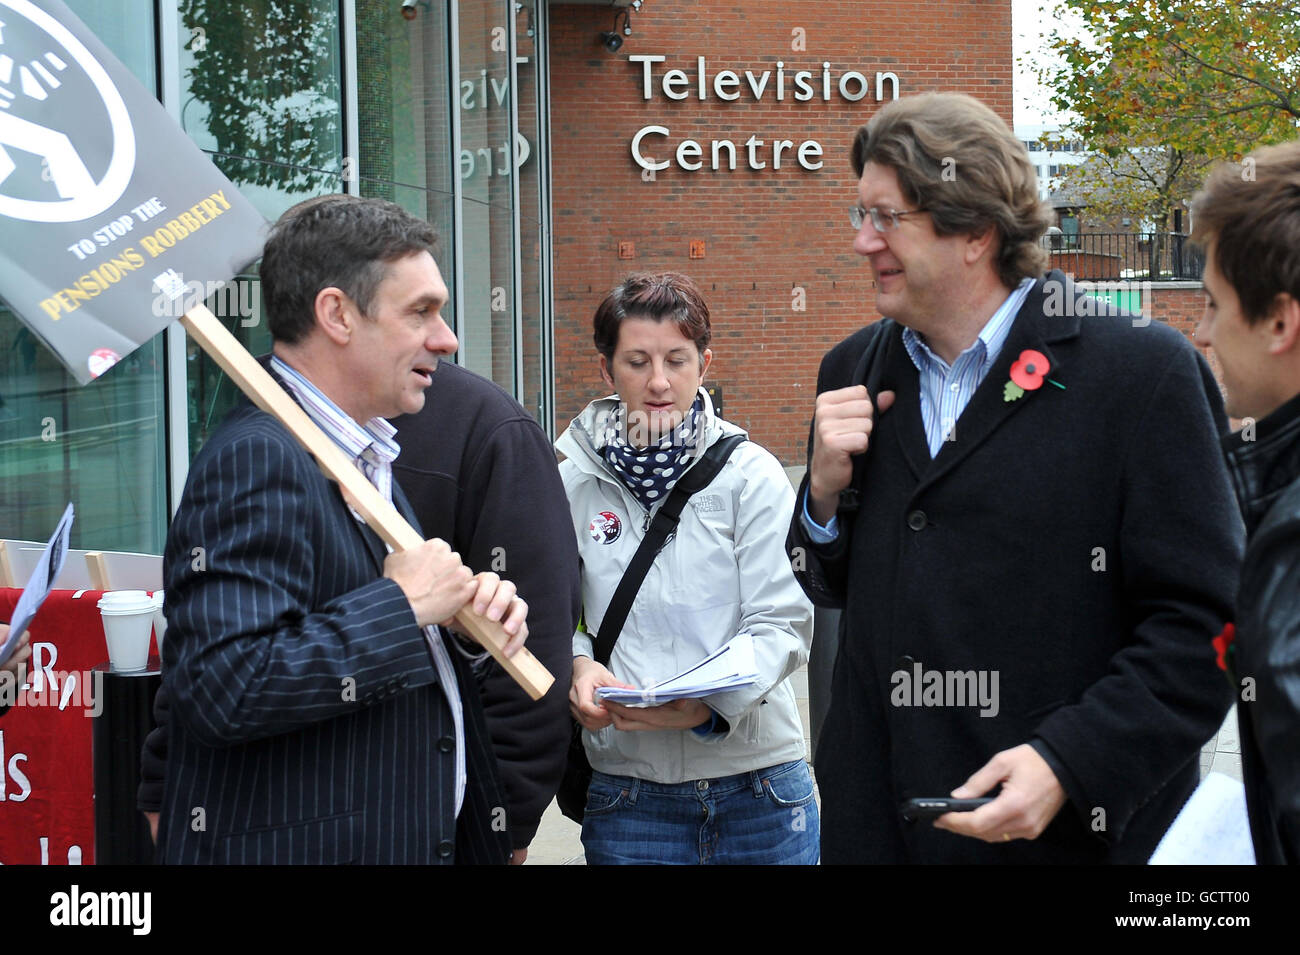 Paul Mason, Editor de Economía de Newsnight, (izquierda) se enfrenta al Director General Adjunto Mark Byford (derecha) en la línea de piquete fuera del Centro de Televisión de la BBC, Londres. Foto de stock